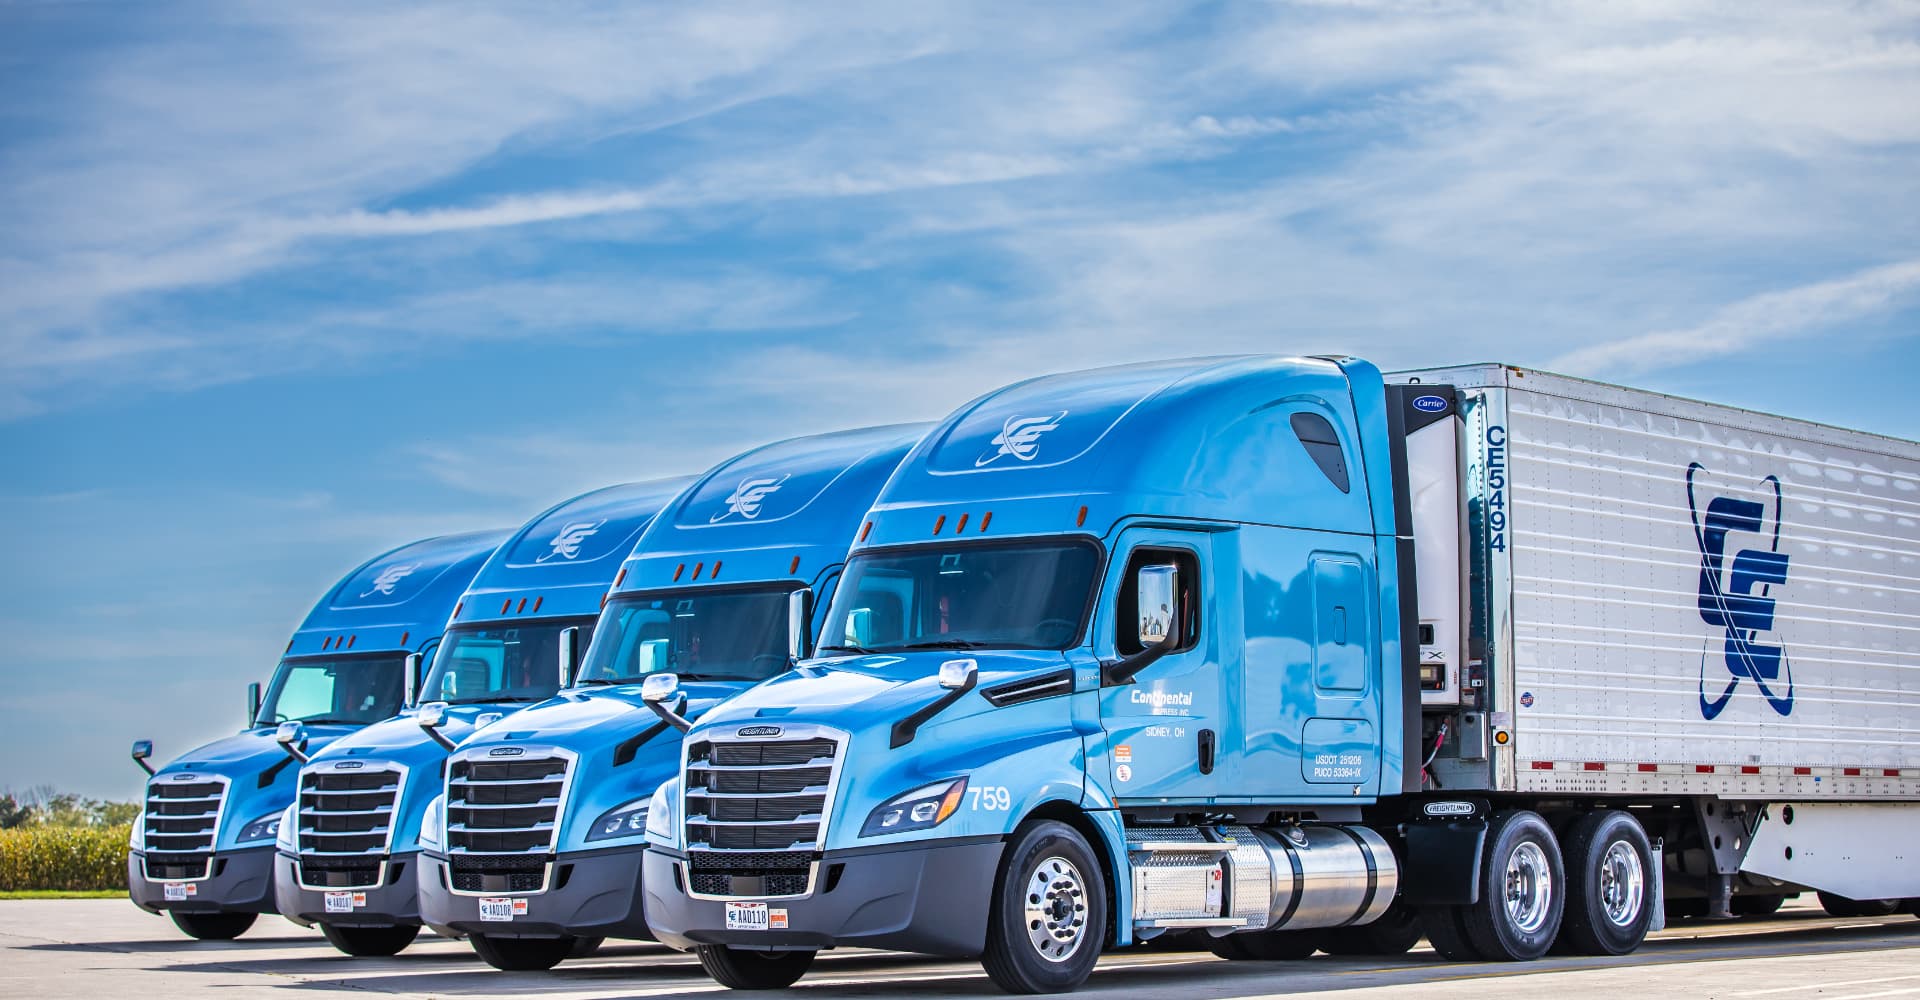 Continental Express truck fleet